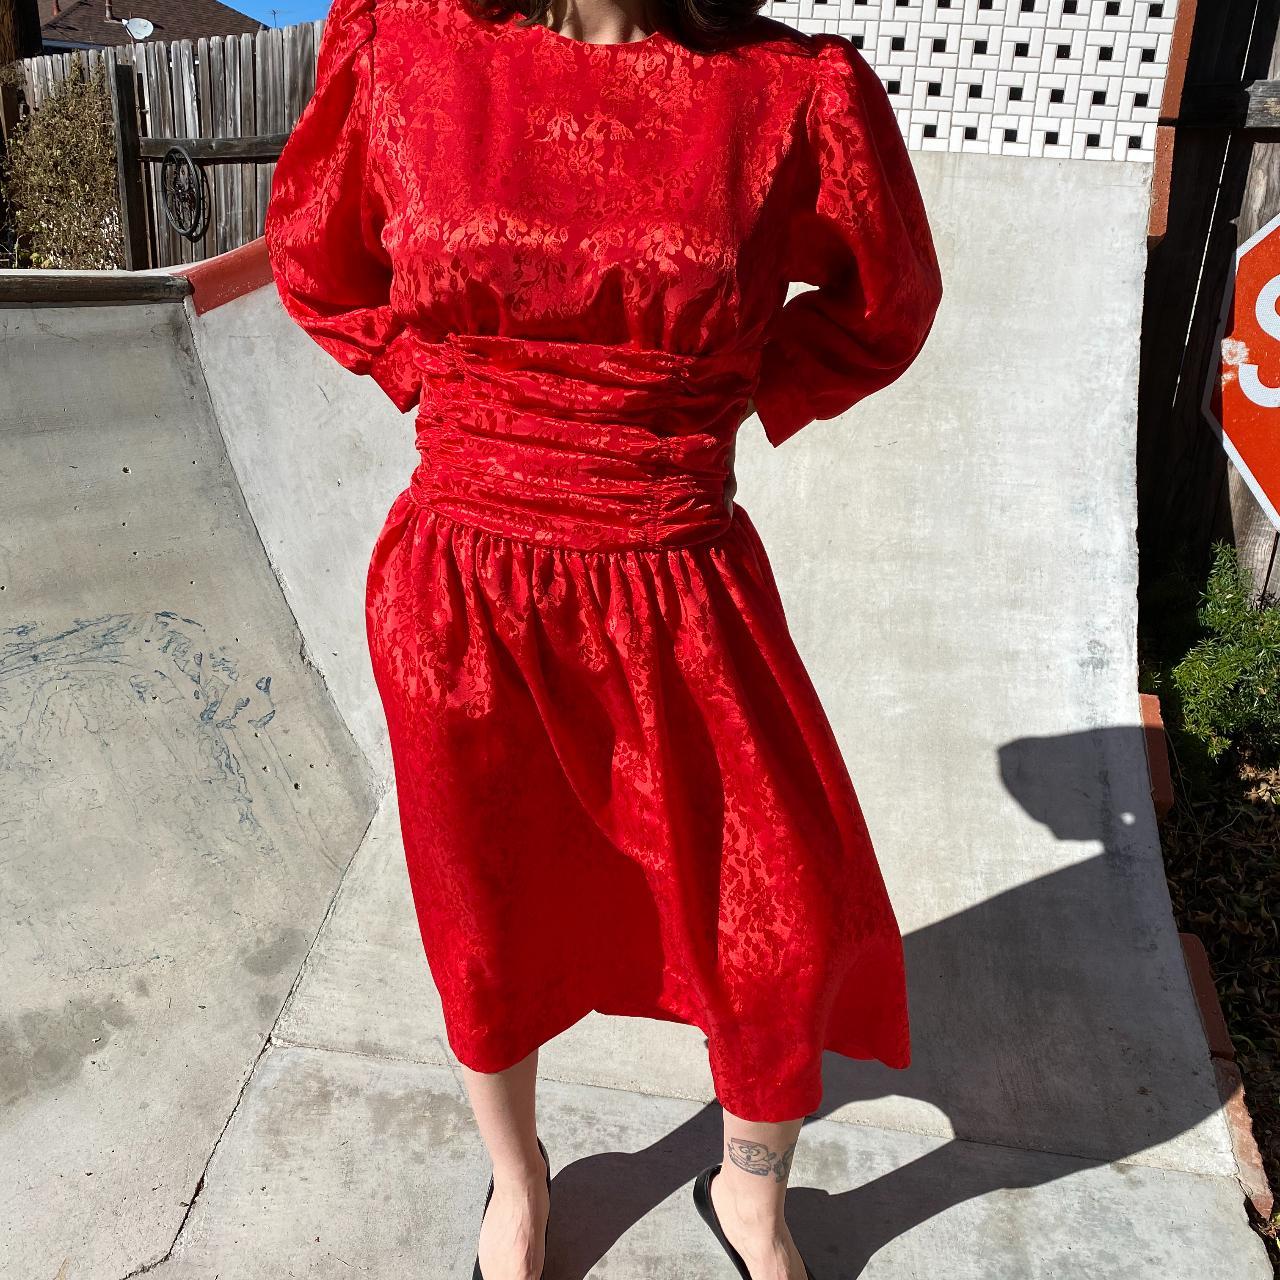 Impromptu Women's Red Dress (2)